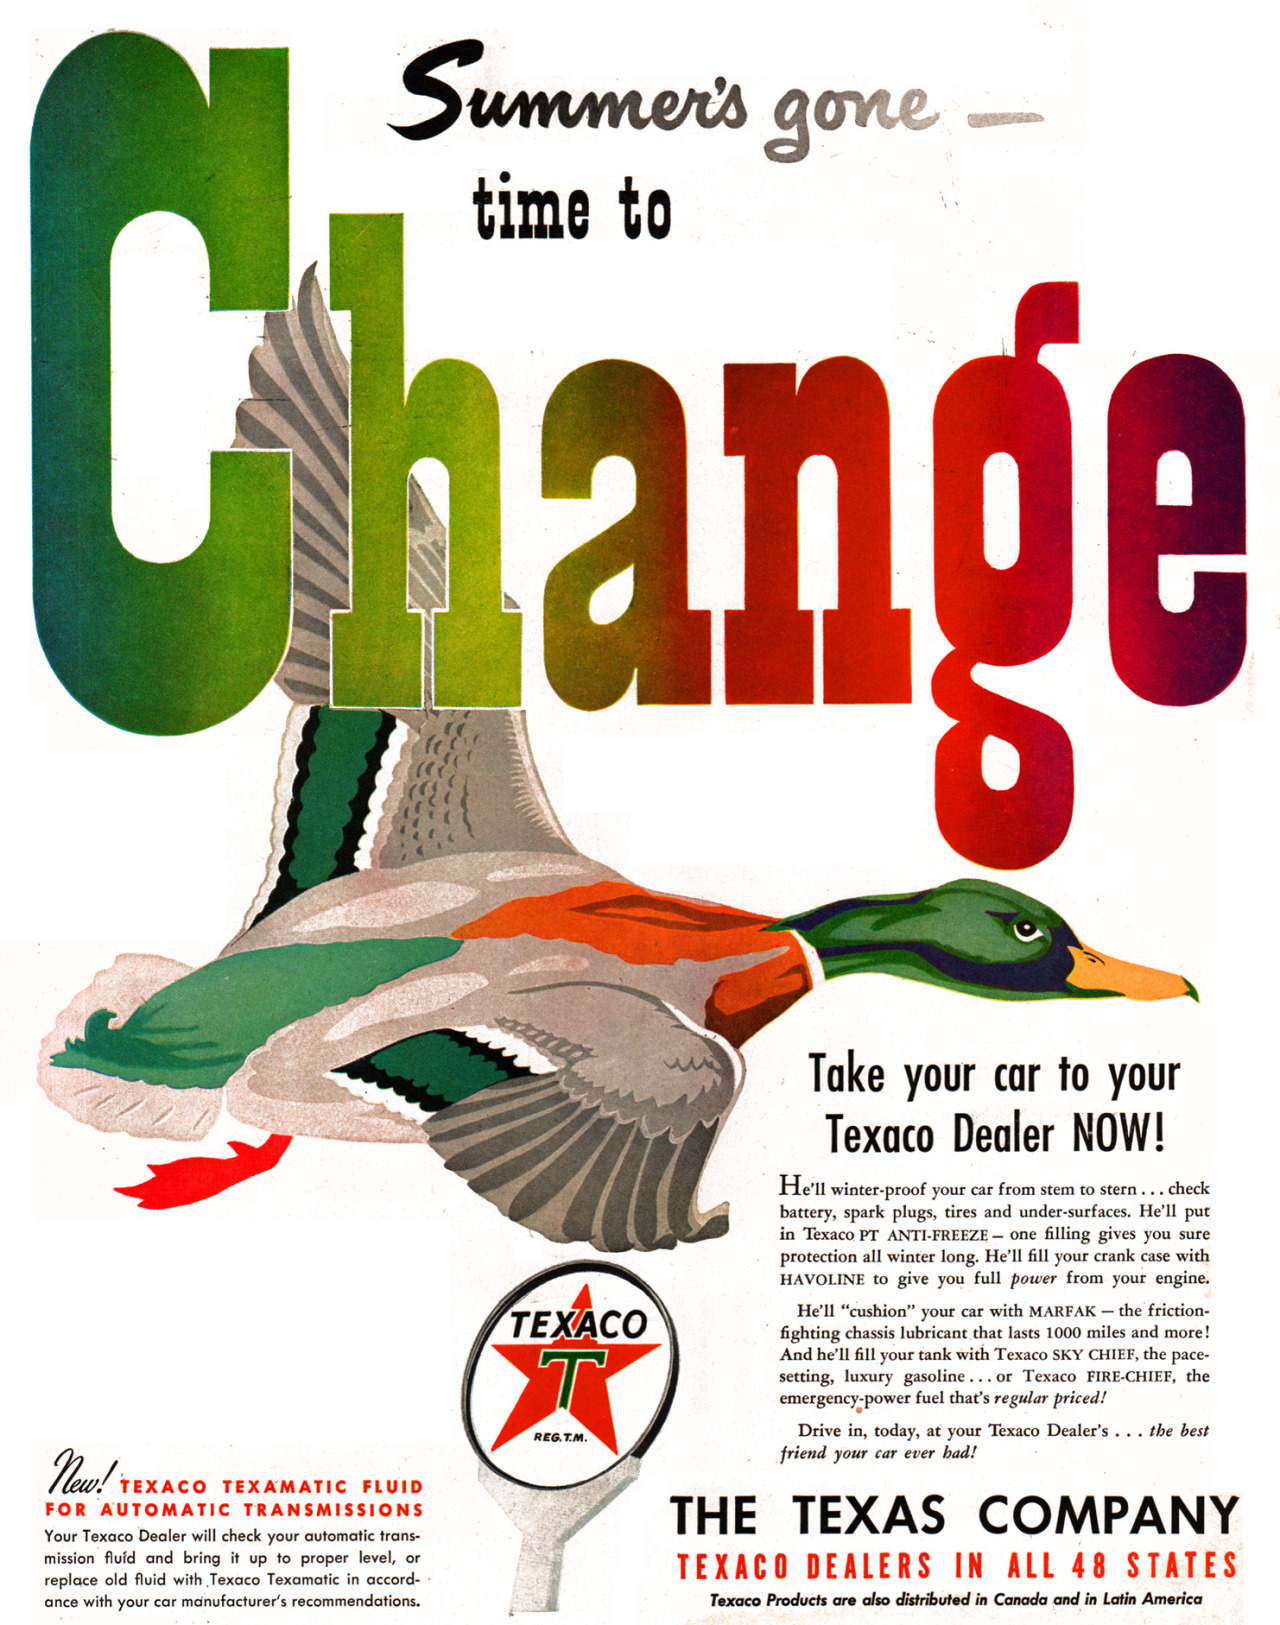 The Texas Company - 1949